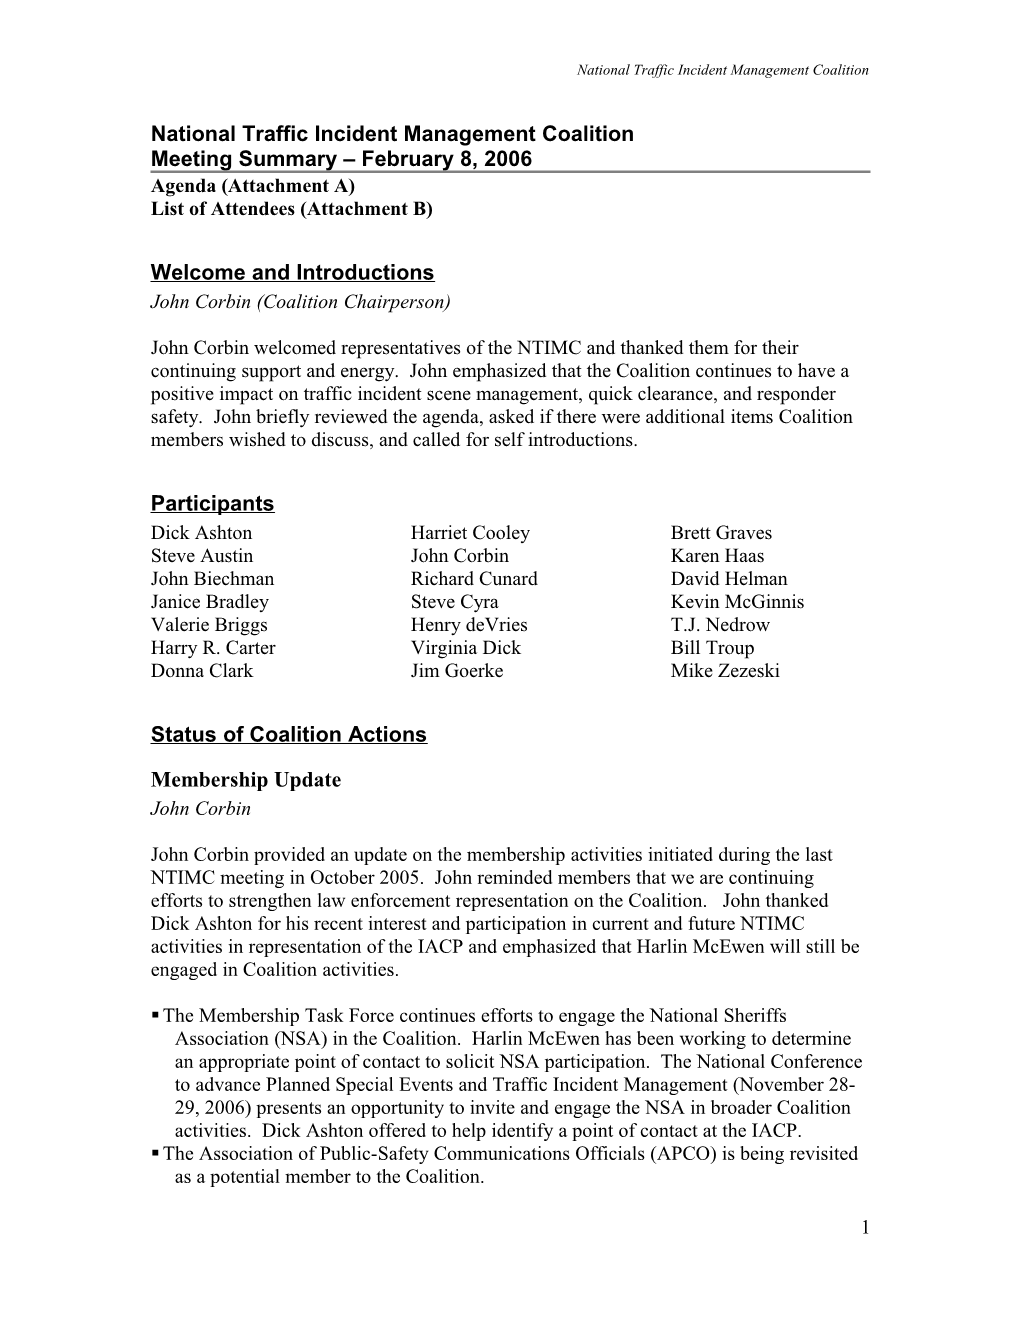 February 2006 Meeting Summary Notes